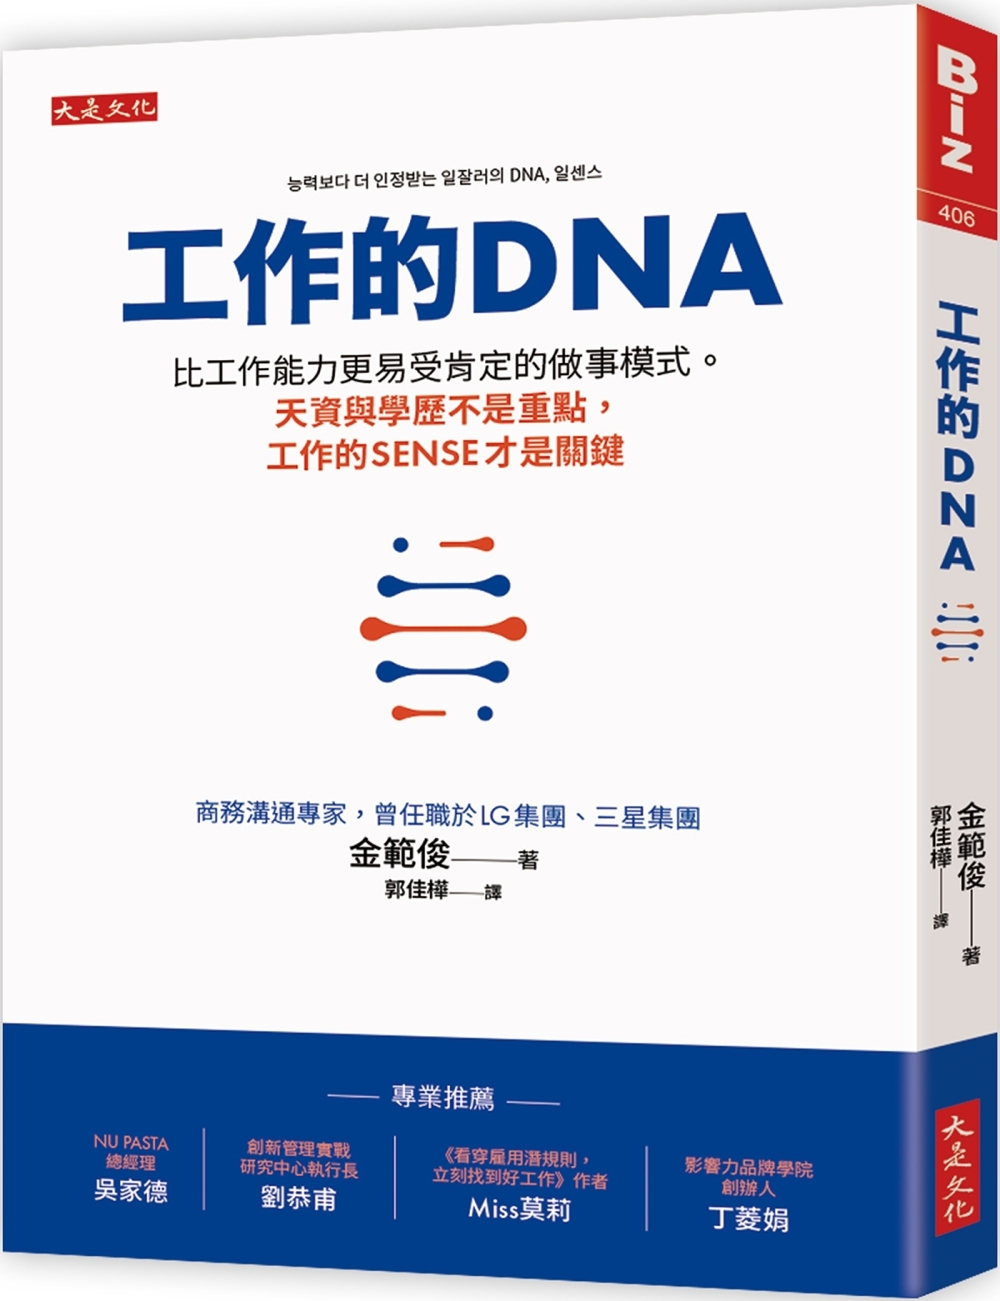 工作的DNA：比工作能力更易受肯定的做事模式。天資與學歷不是...